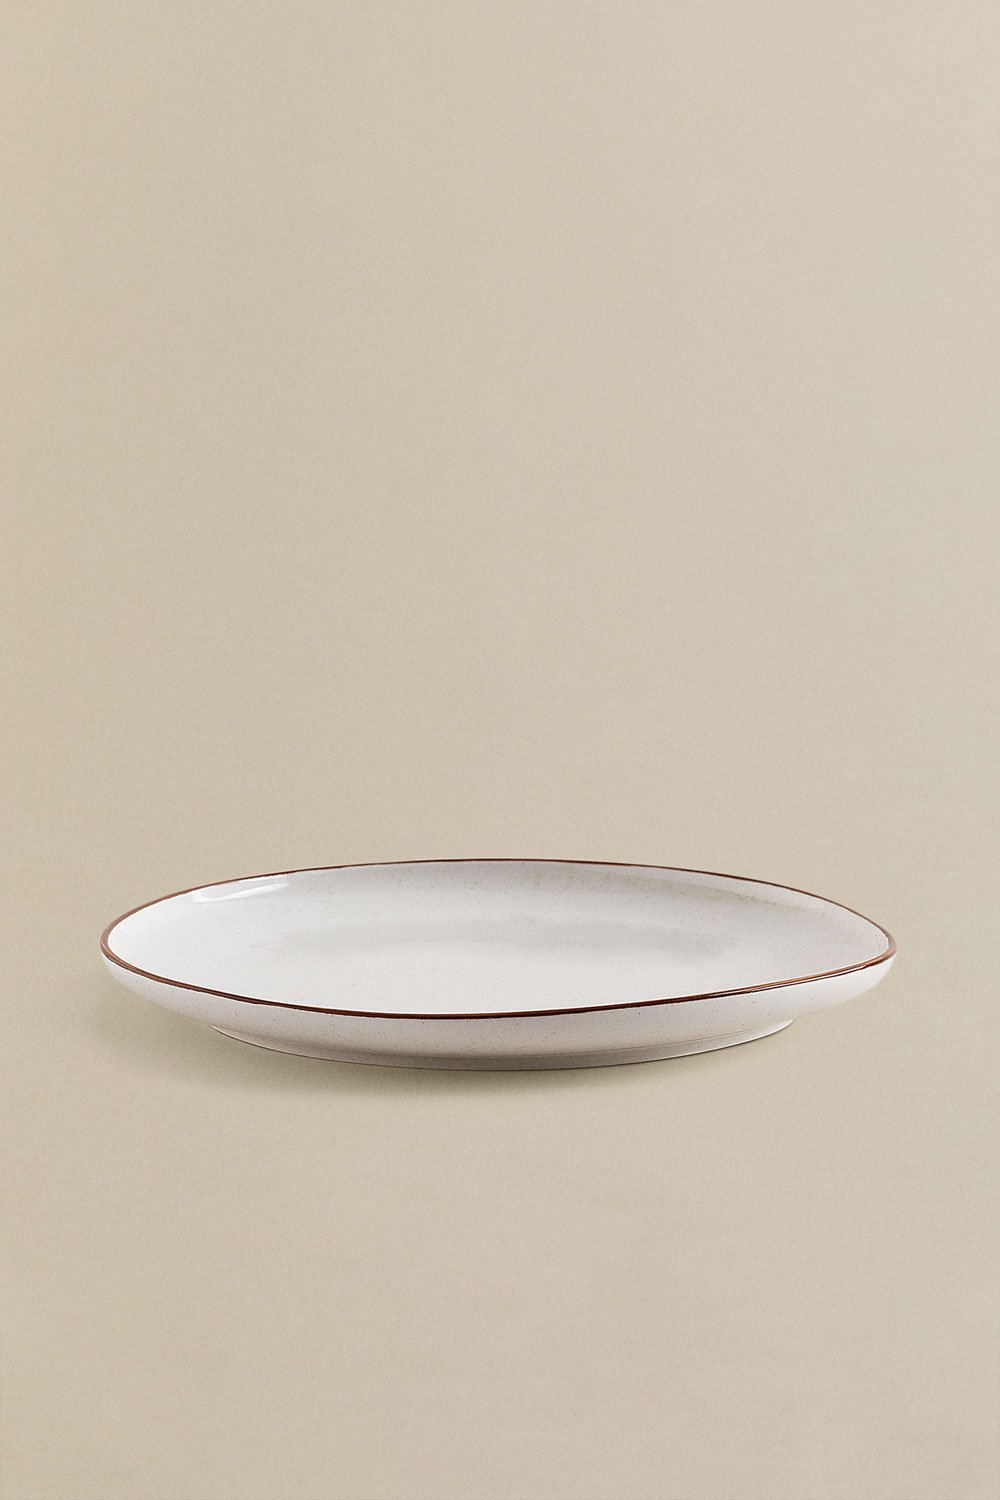 Ensemble de vaisselle de Luxe LooMar - 16 pièces - 4 personnes - Porcelaine  - Ensemble